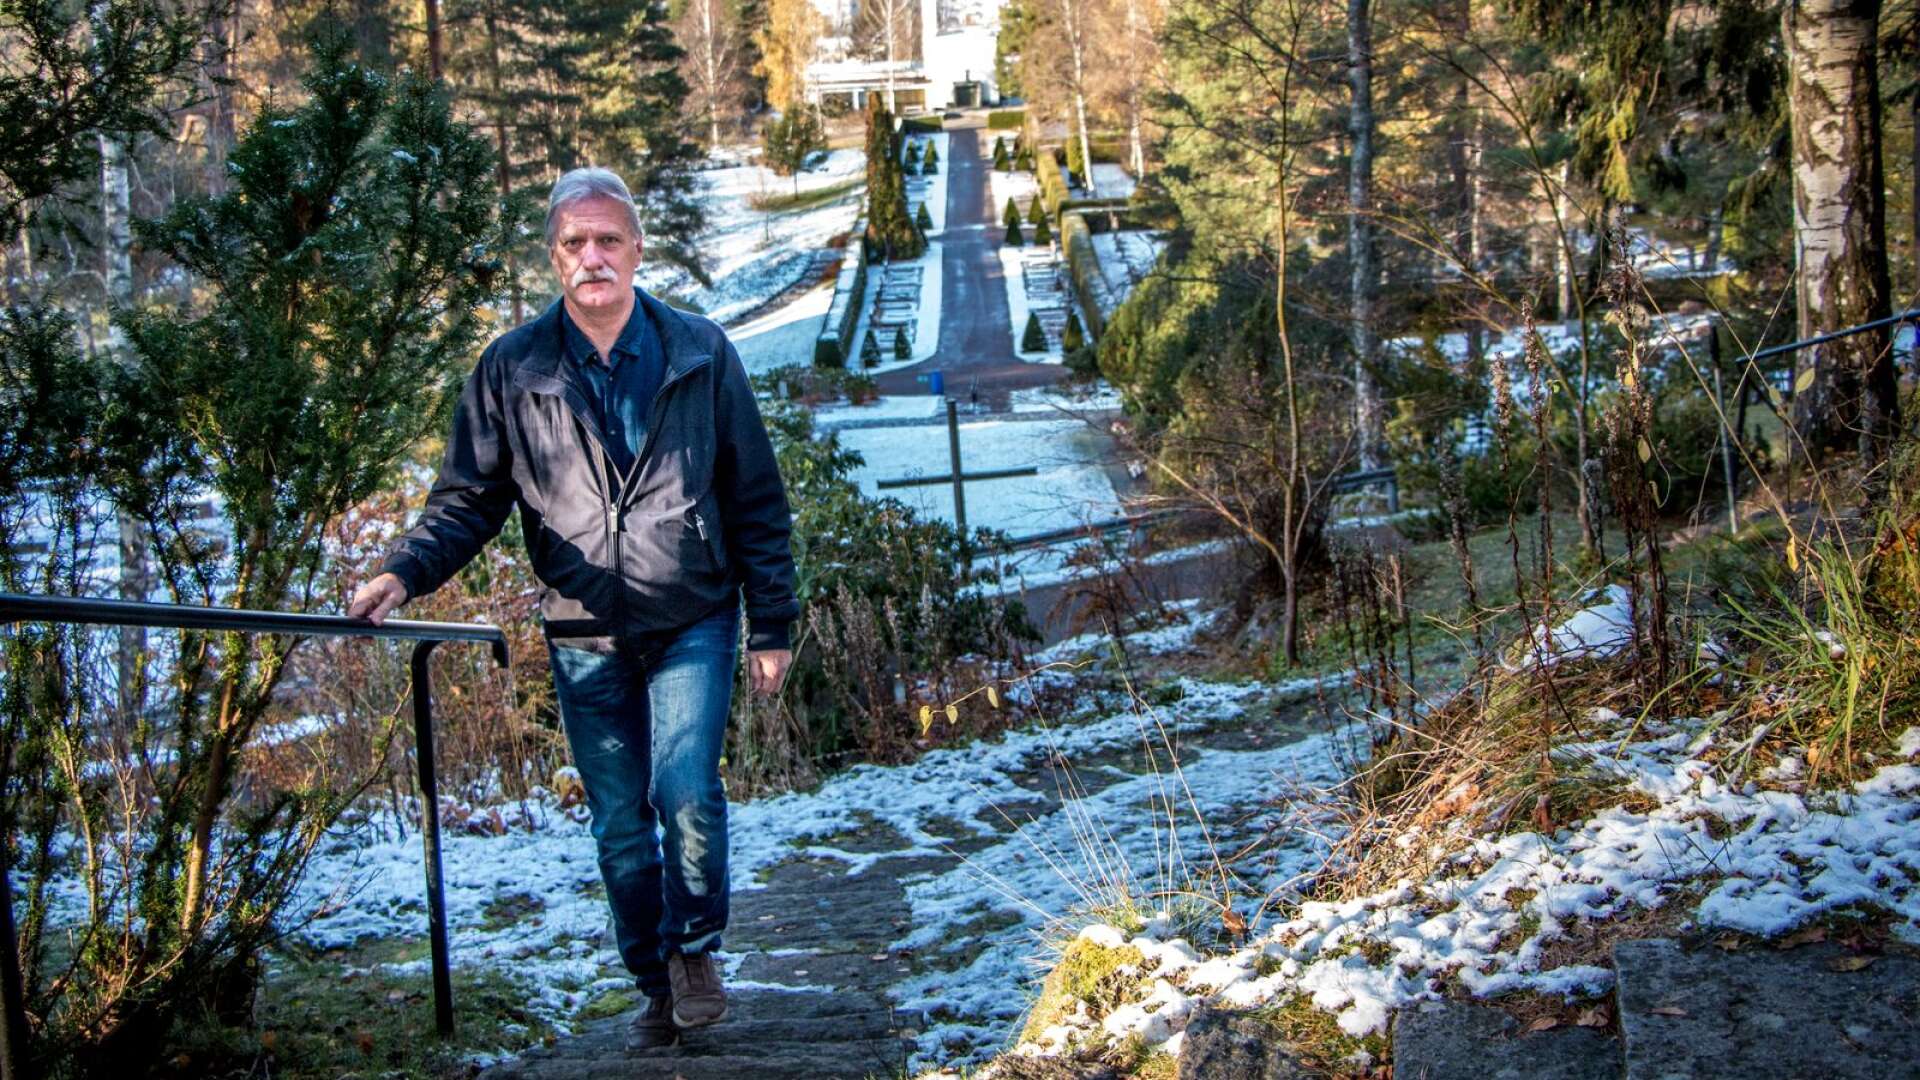 &quot;Det finns så många sinnesintryck att få här&quot; säger kyrkogårdschefen Mats Svensson om den nyblivna hundraåringen och lyfter just terrängen som en egenskap som gör kyrkogården unik.